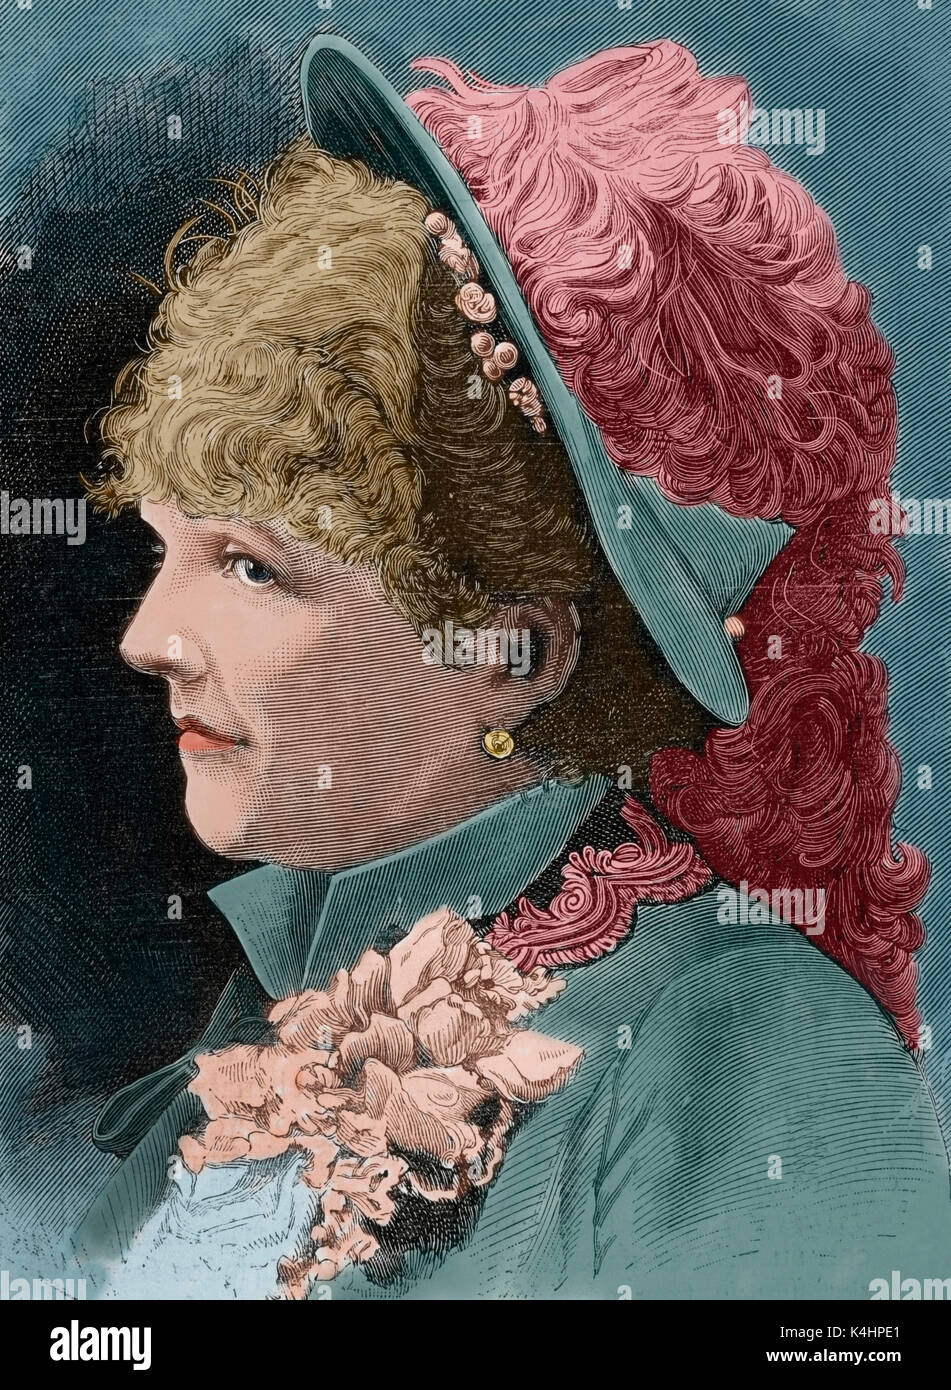 Celine Chaumont (1848-1926). Französische Operette Sänger. Porträt. Kupferstich von Haube. 'La Ilustracion Espanola y Americana", 1883. Gefärbt. Stockfoto